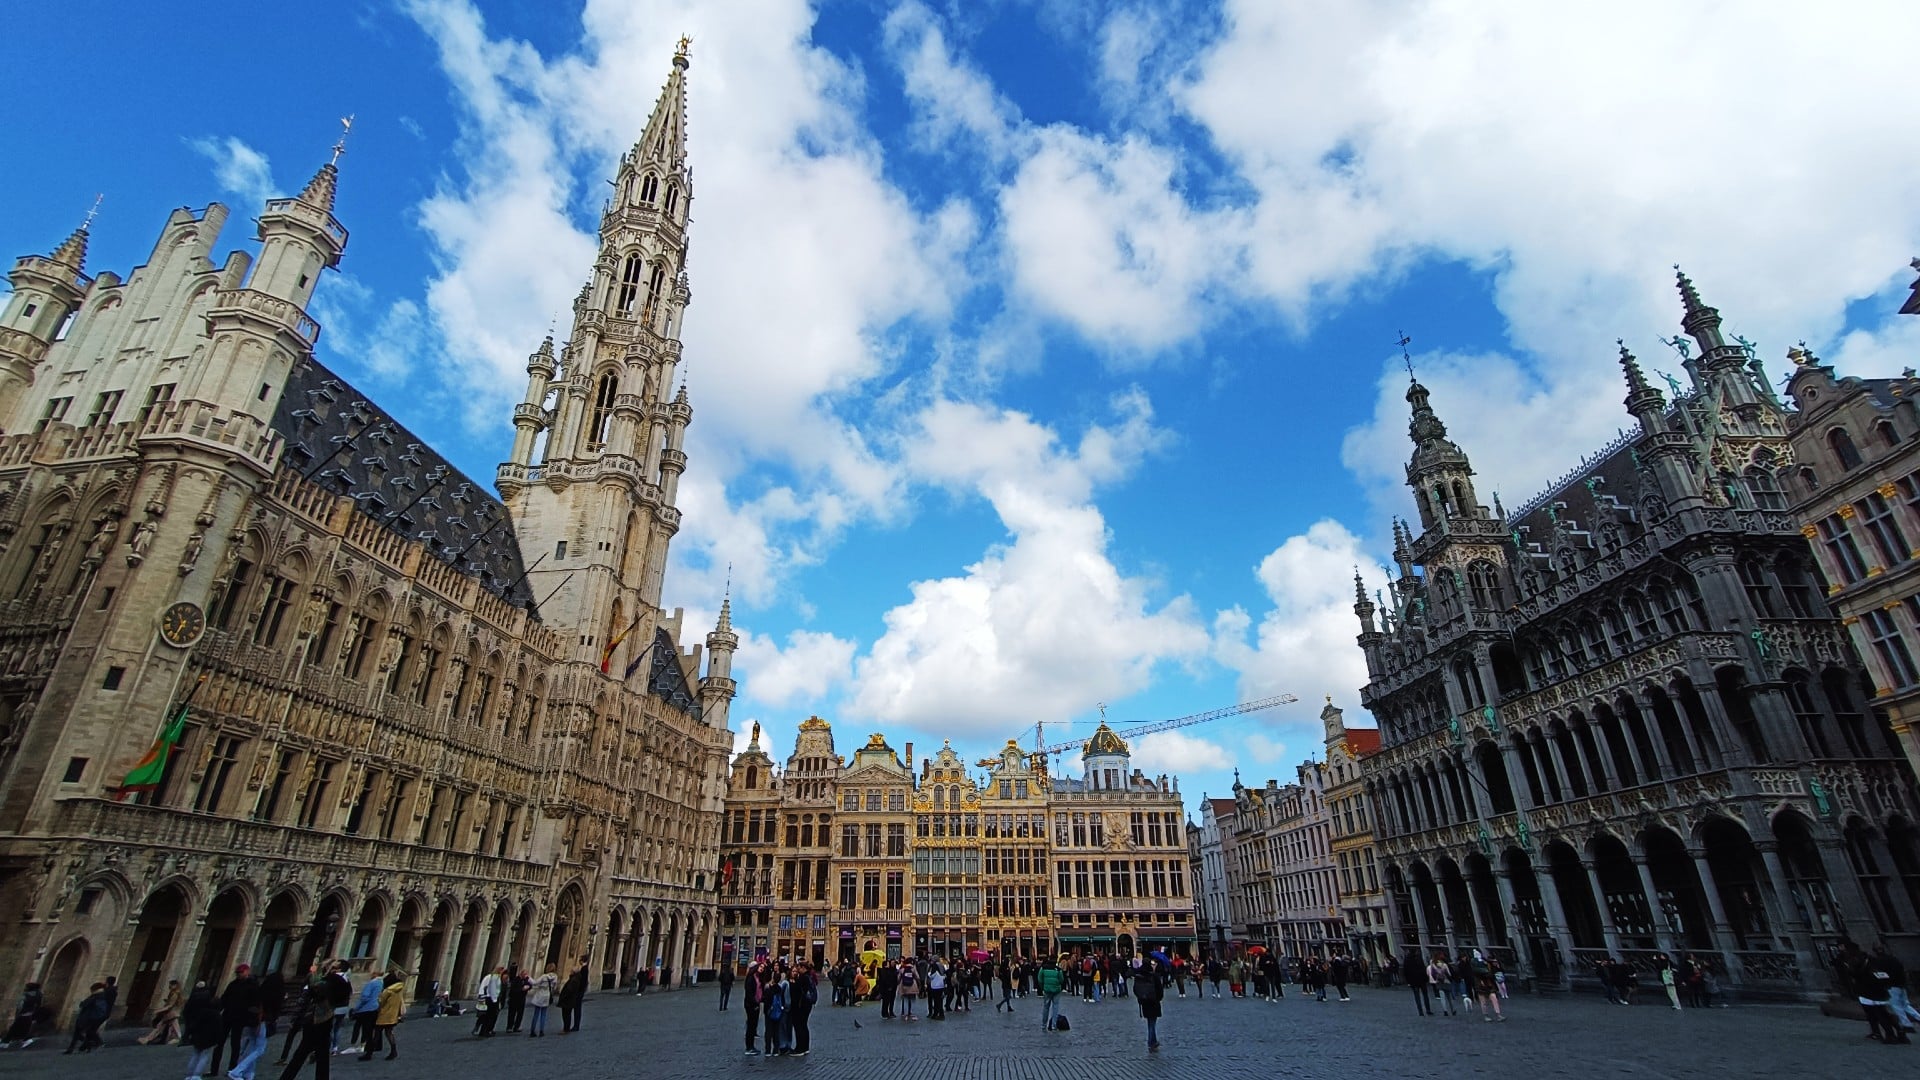 efensivas de la ciudad, el Pentágono de Bruselas contiene algunas de las atracciones más famosas de la capital belga, convirtiéndolo en la mejor zona donde alojarse en BXL para turistas